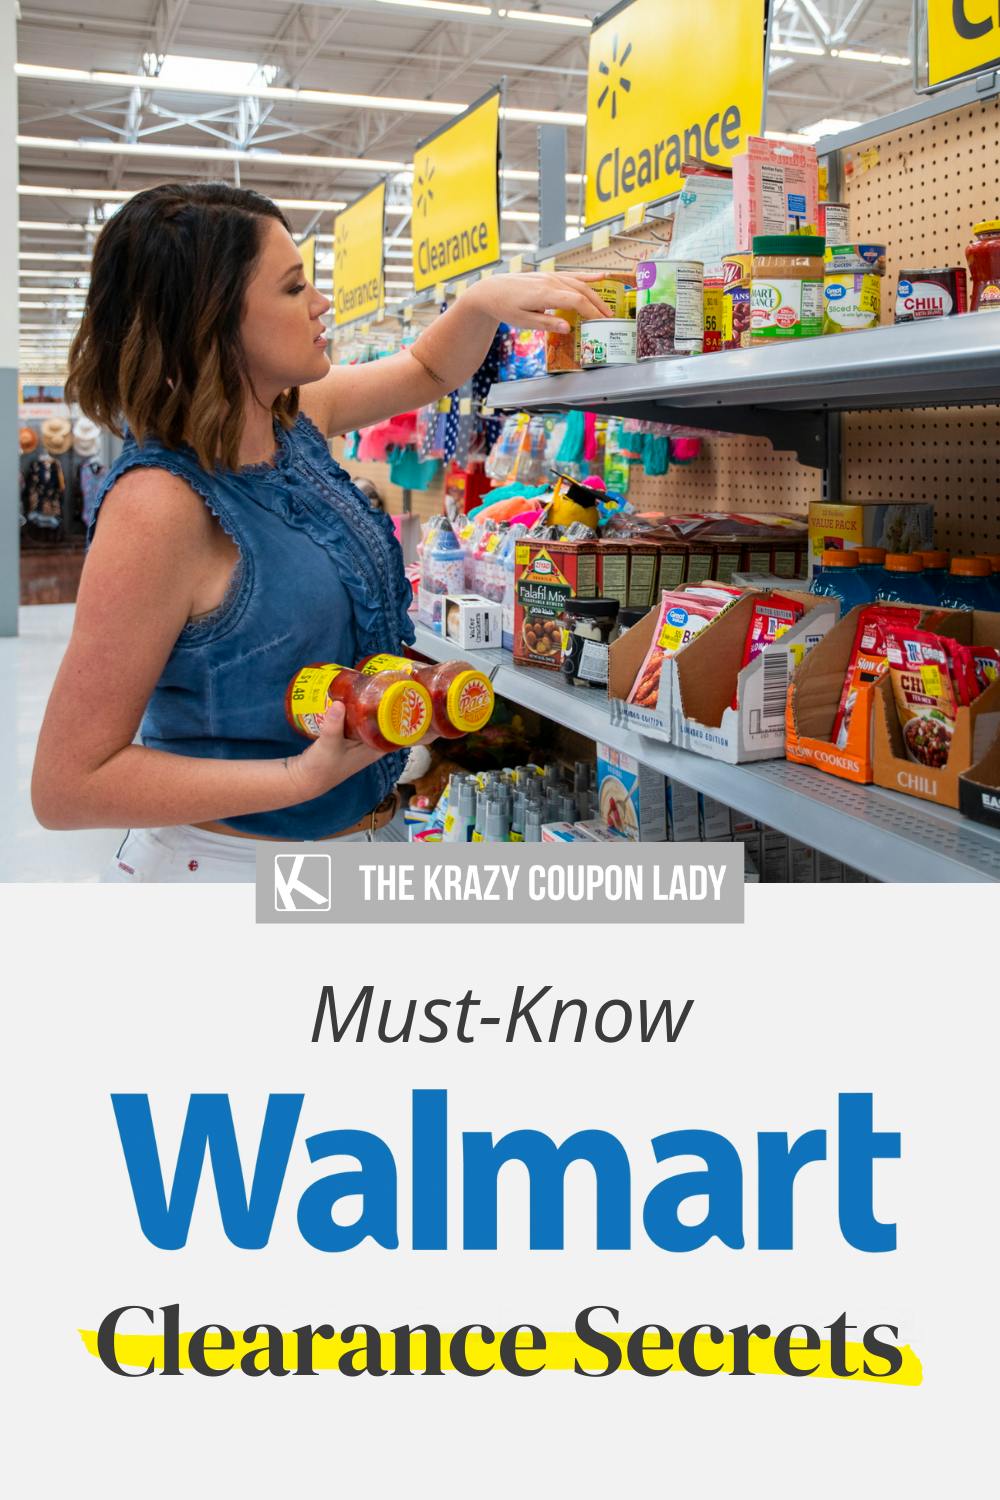 15 Secrets for Finding Walmart Hidden Clearance